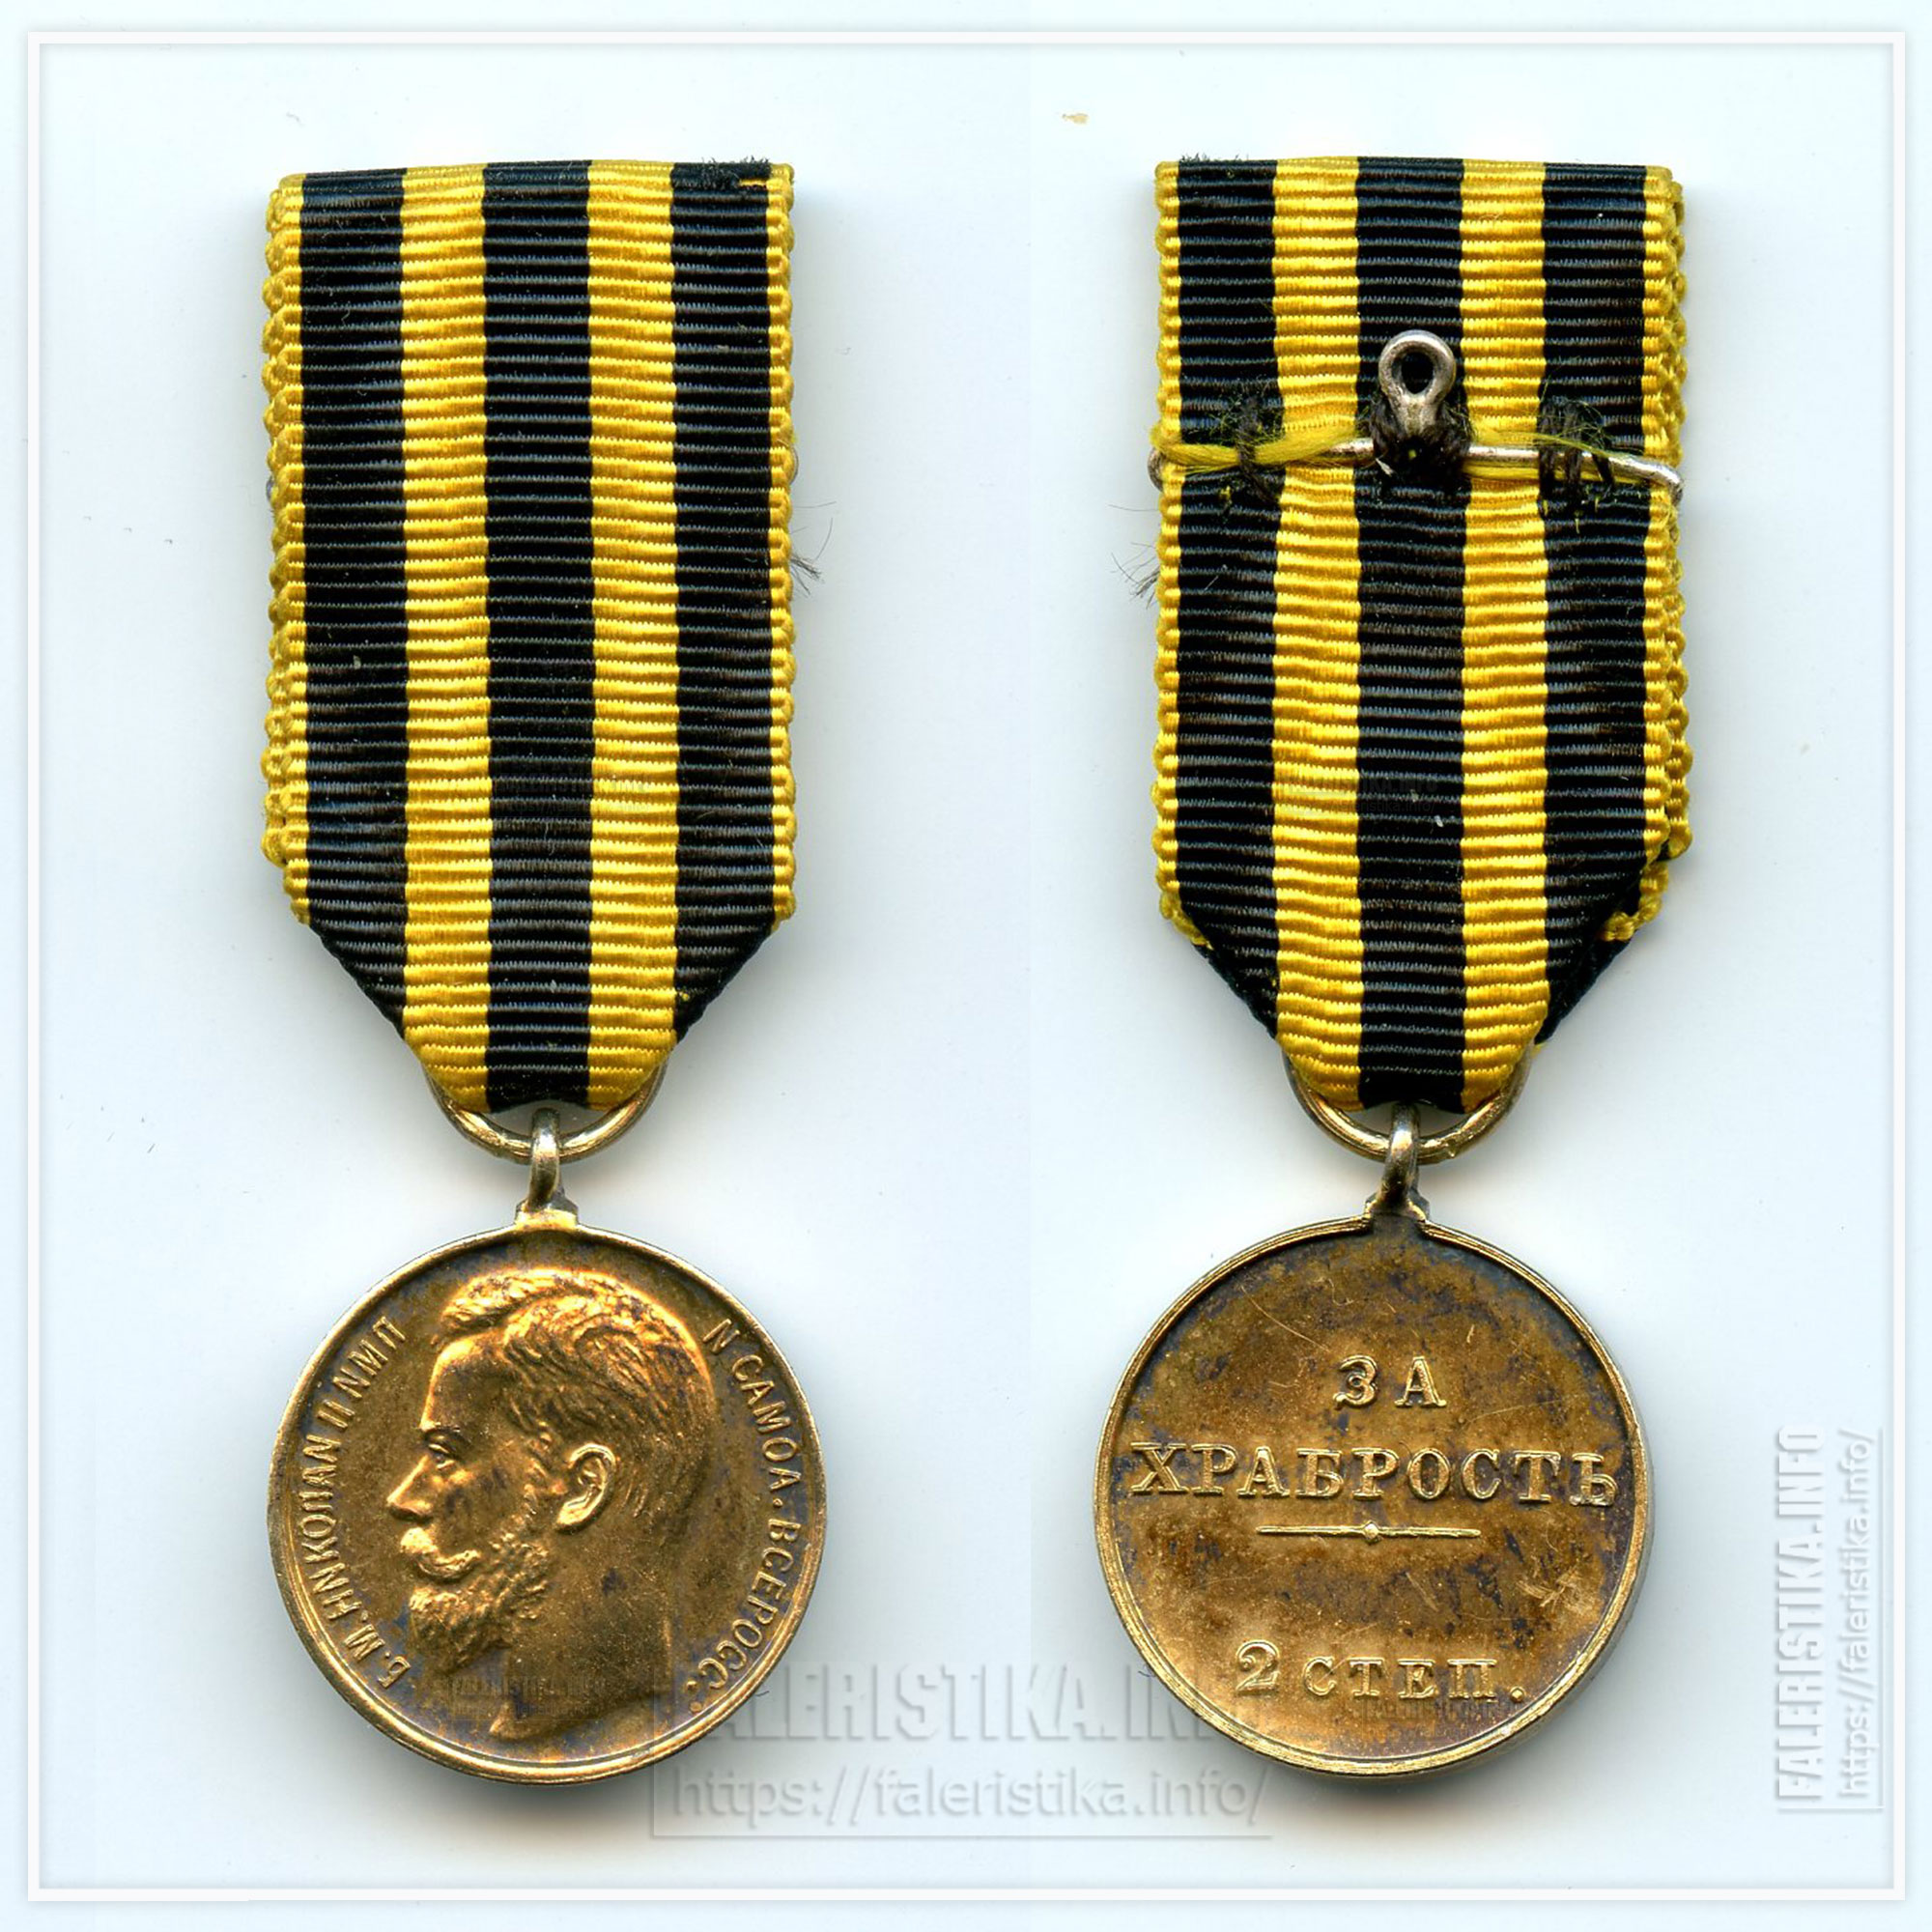 Медаль "За храбрость" Николай II 2 степени. Миниатюра